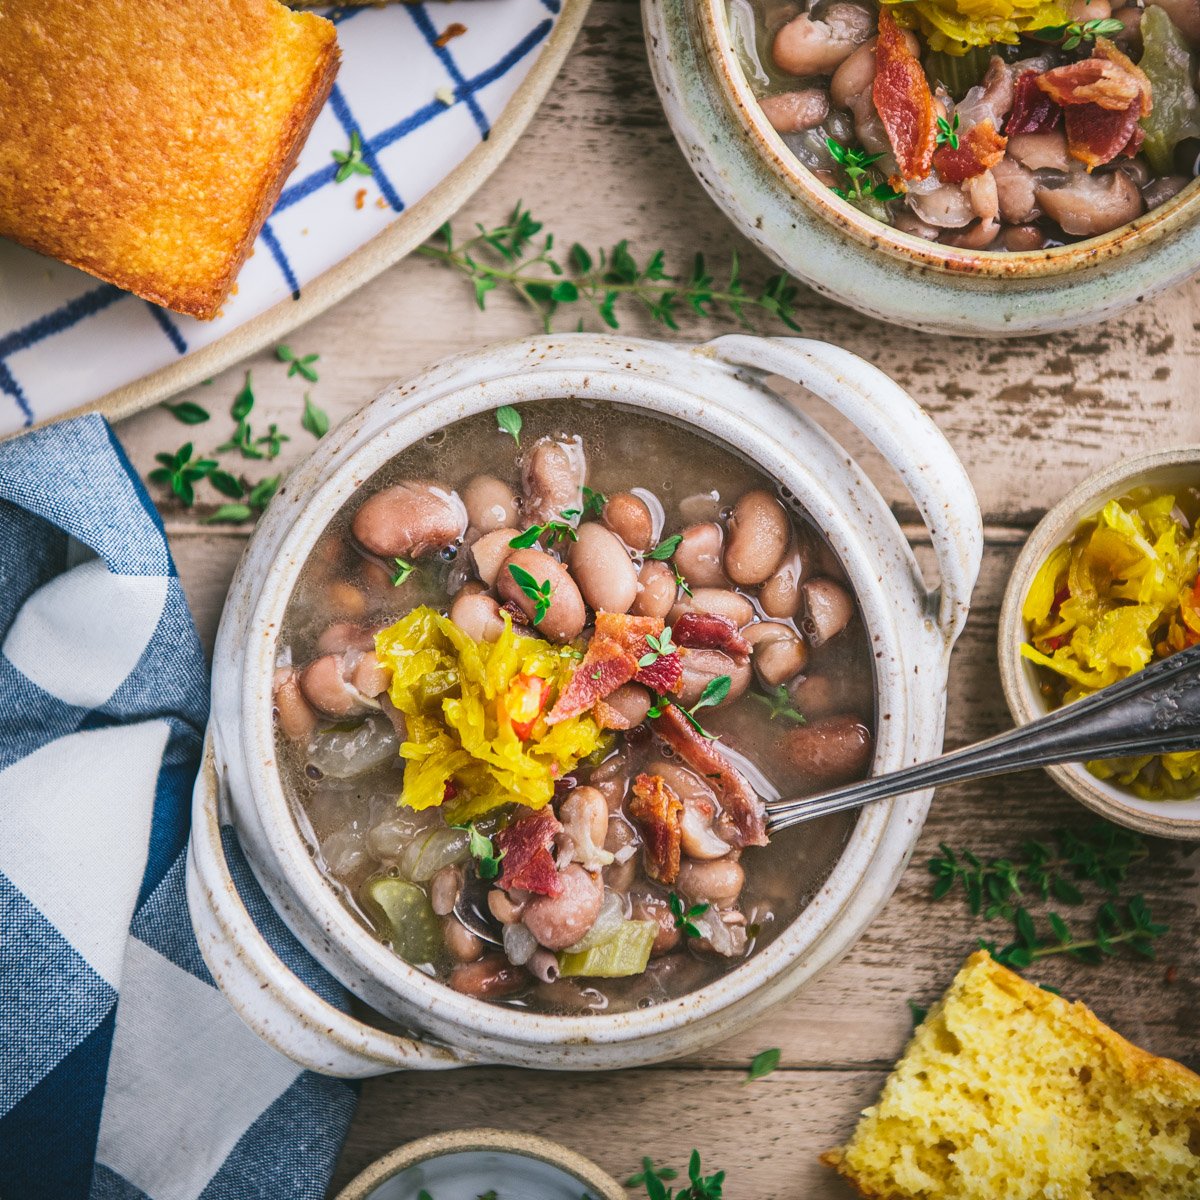 https://www.theseasonedmom.com/wp-content/uploads/2022/08/appalachian-soup-beans-8.jpg